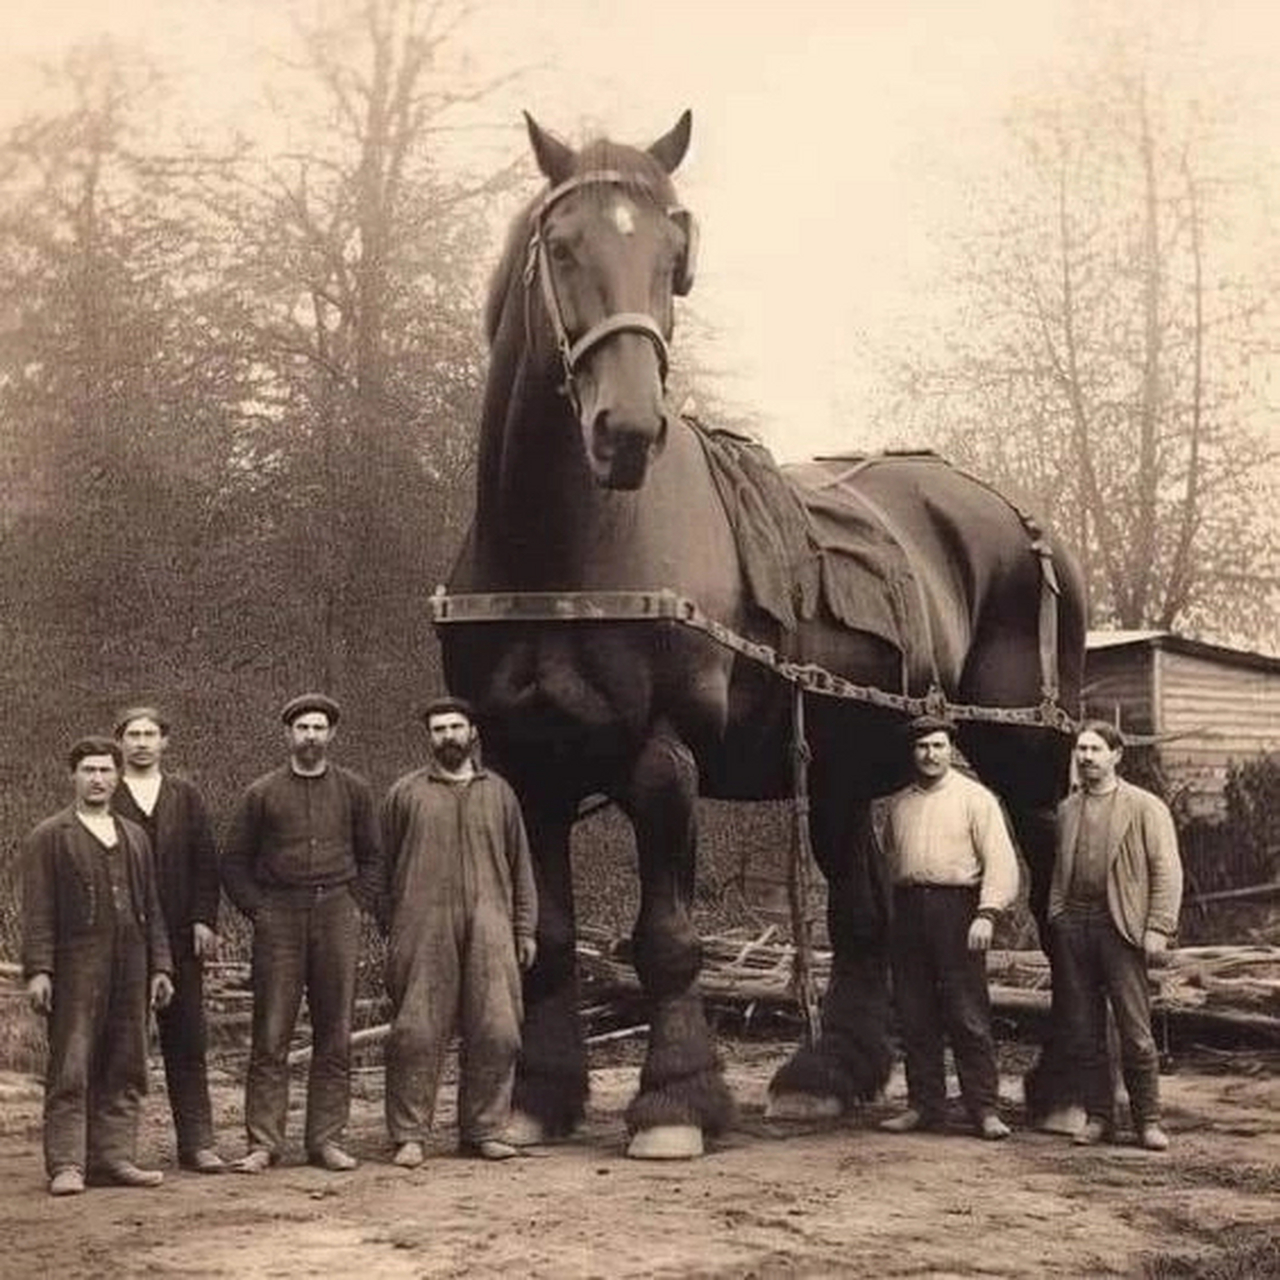 这匹马于1846年出生在英国贝德福德郡的托丁顿磨坊